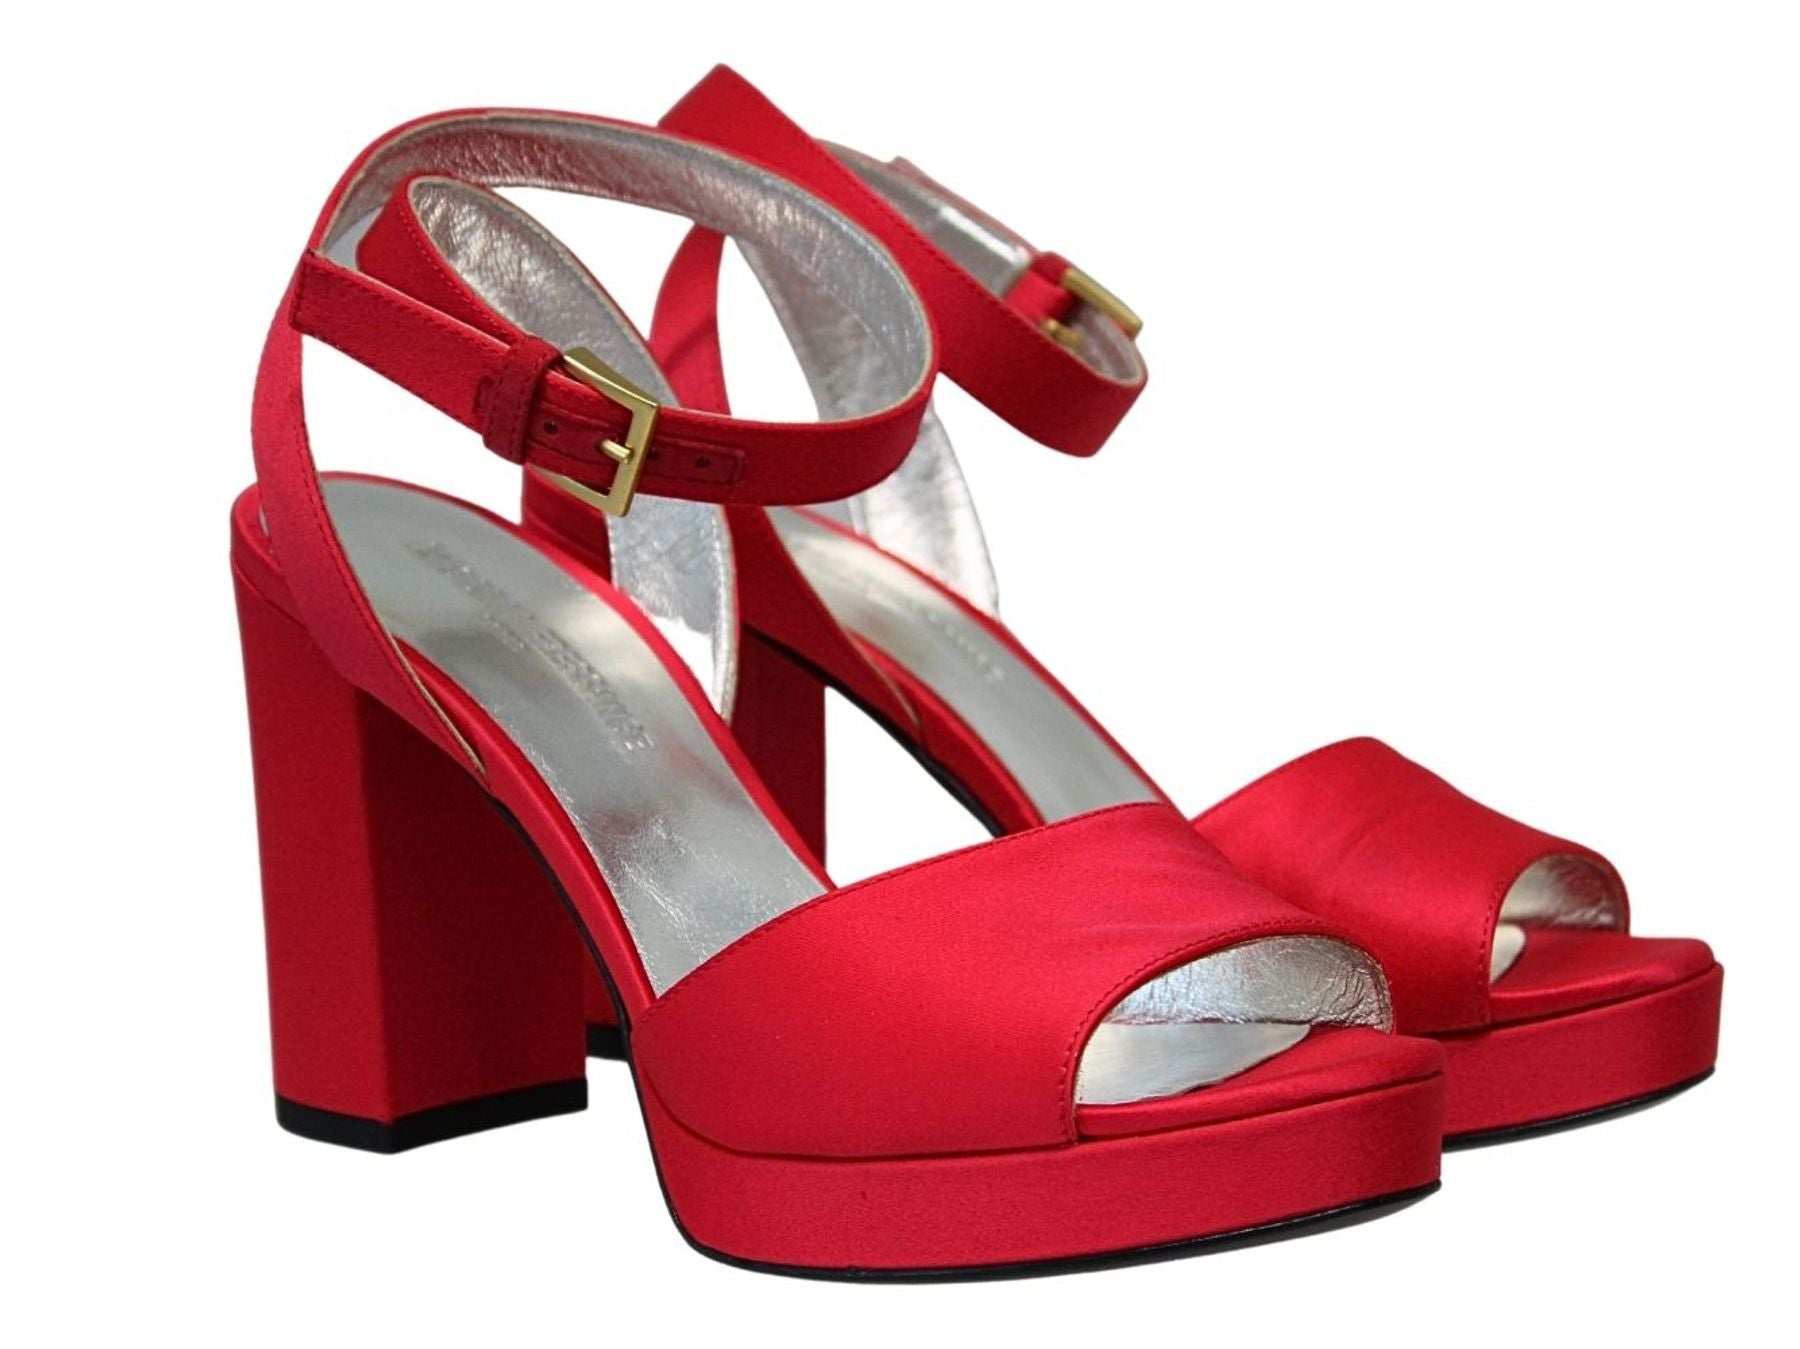 sandals-a-platform-in-red-silk